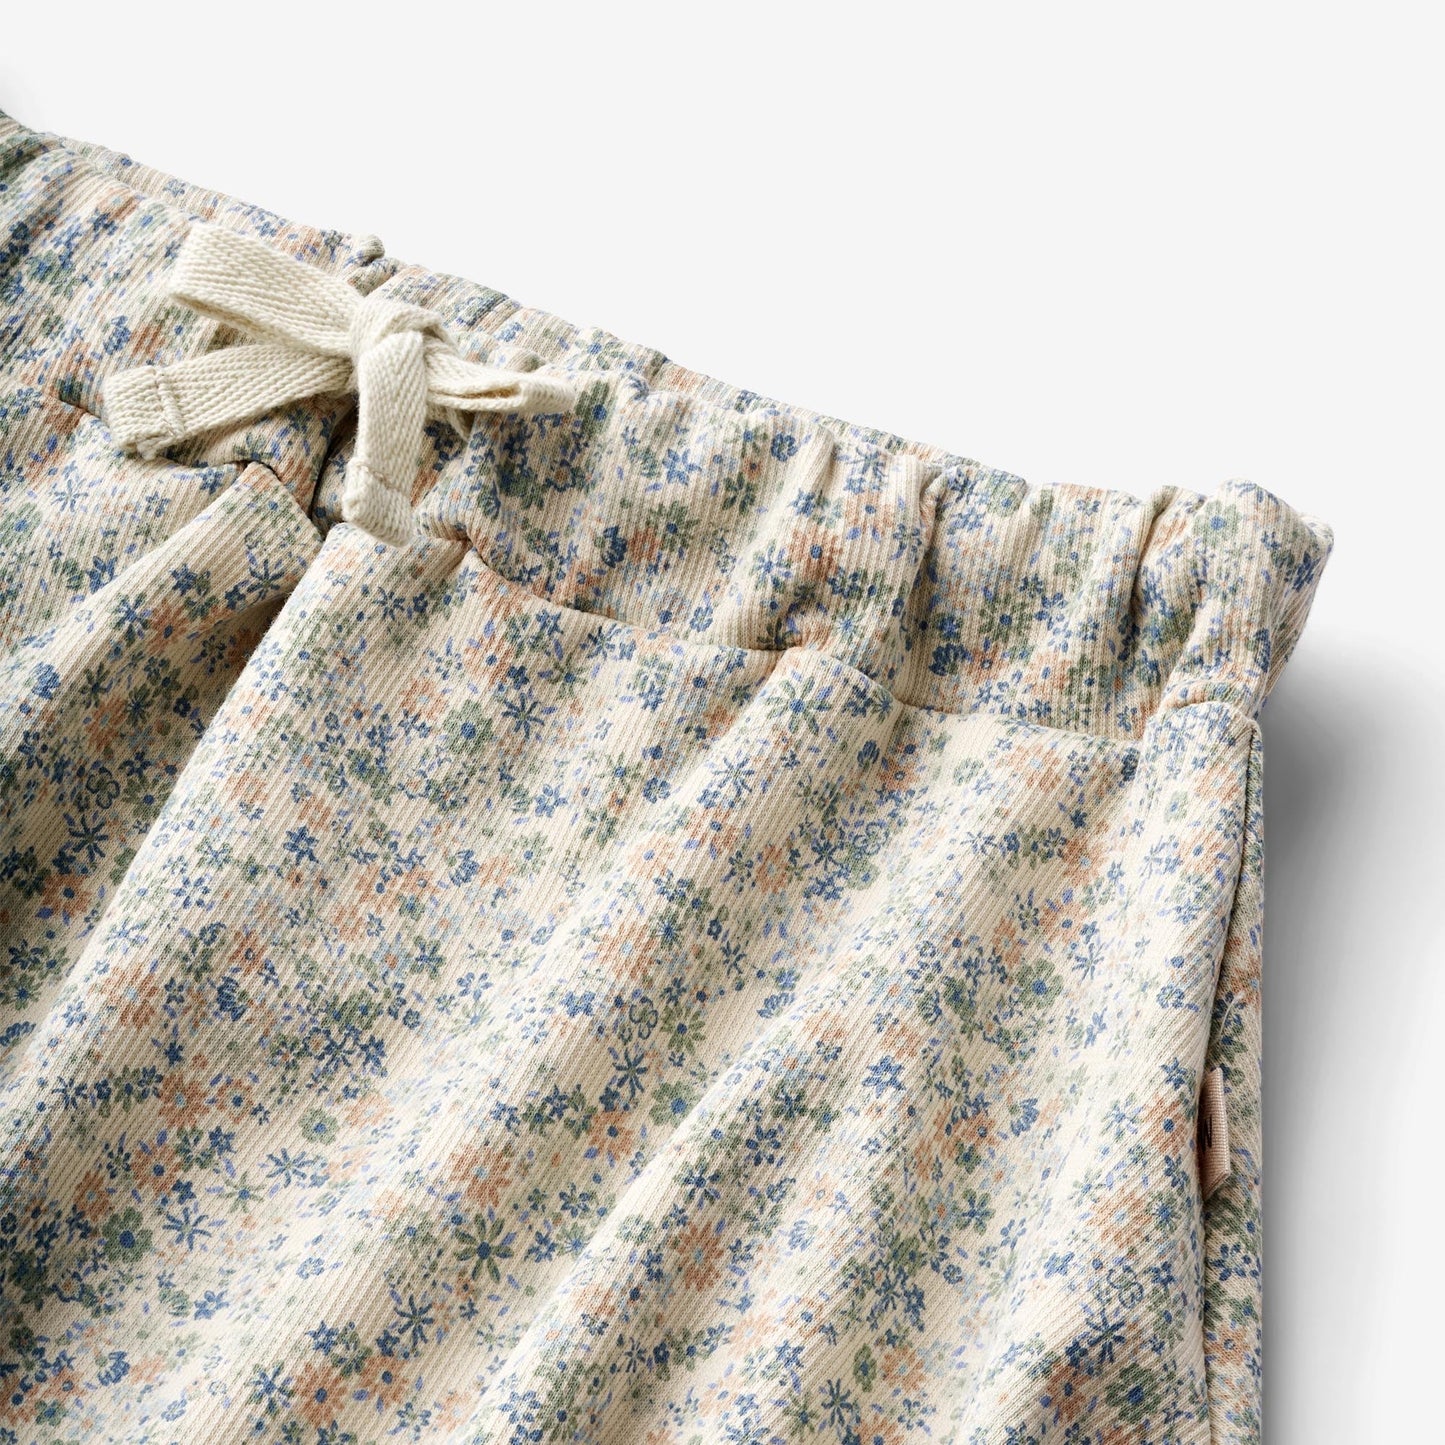 Wheat 'Rosie' Children's Jersey Skirt - Sandshell Mini Flowers